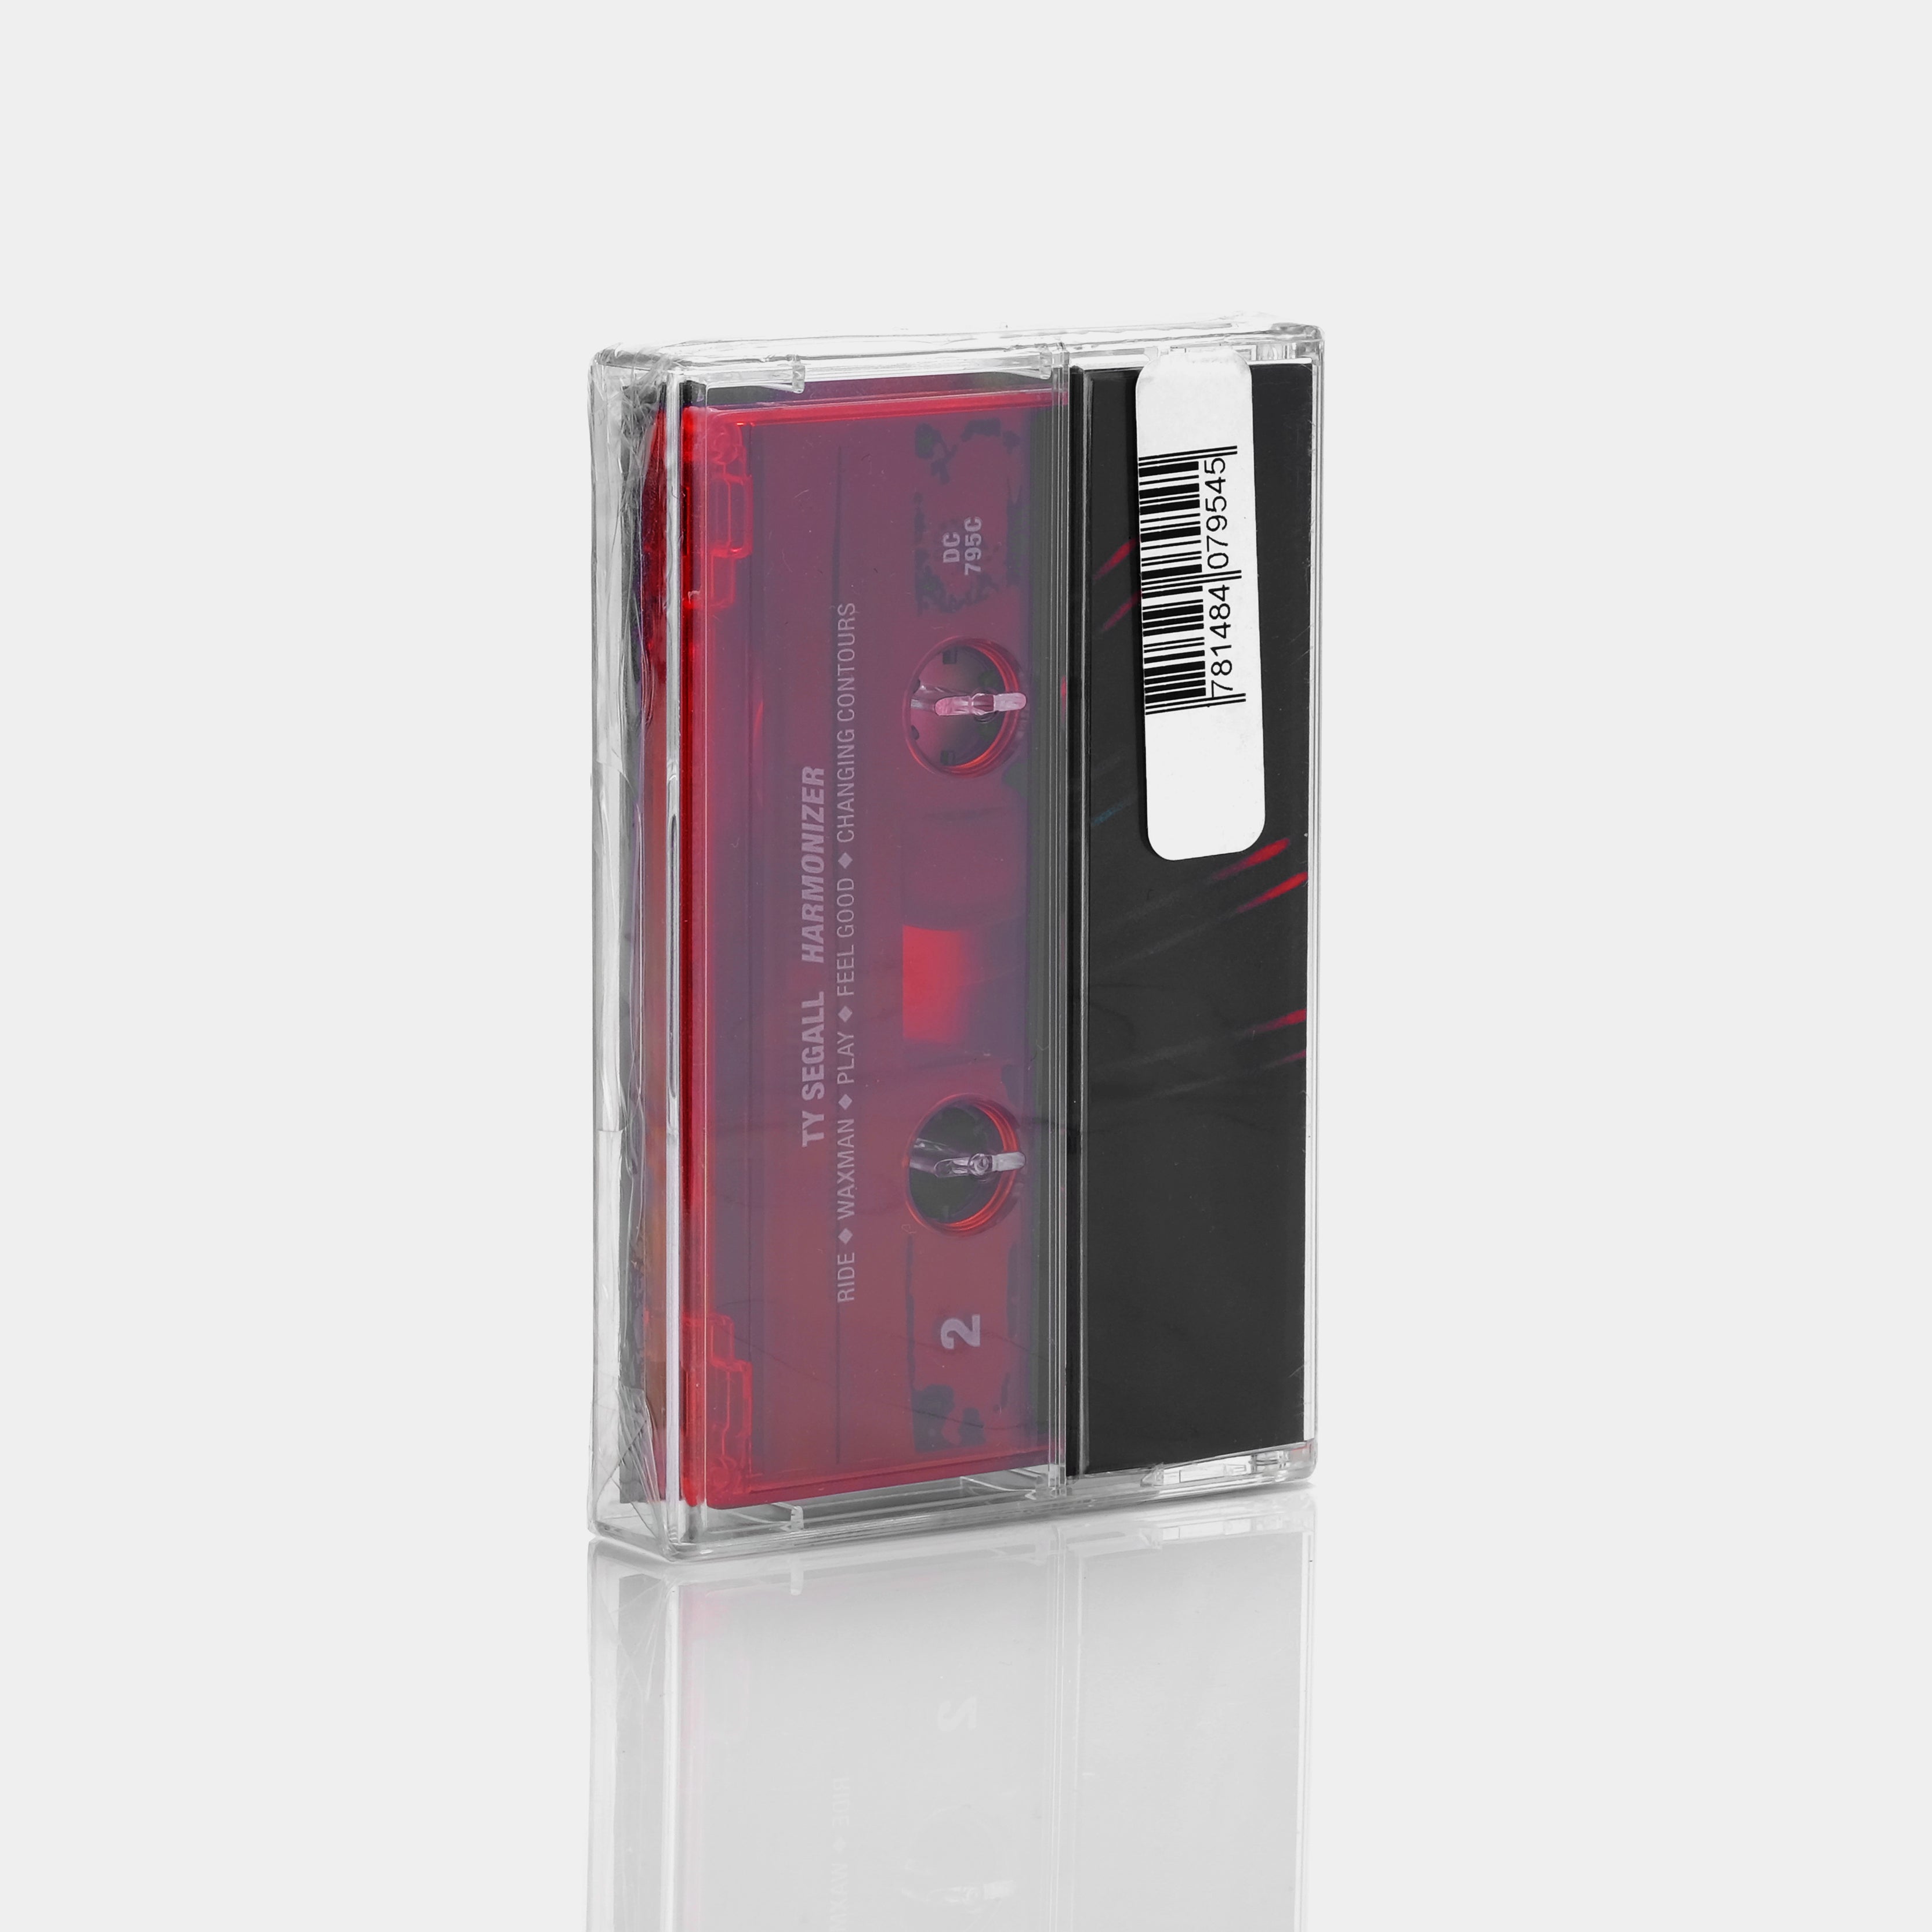 Ty Segall - Harmonizer Cassette Tape